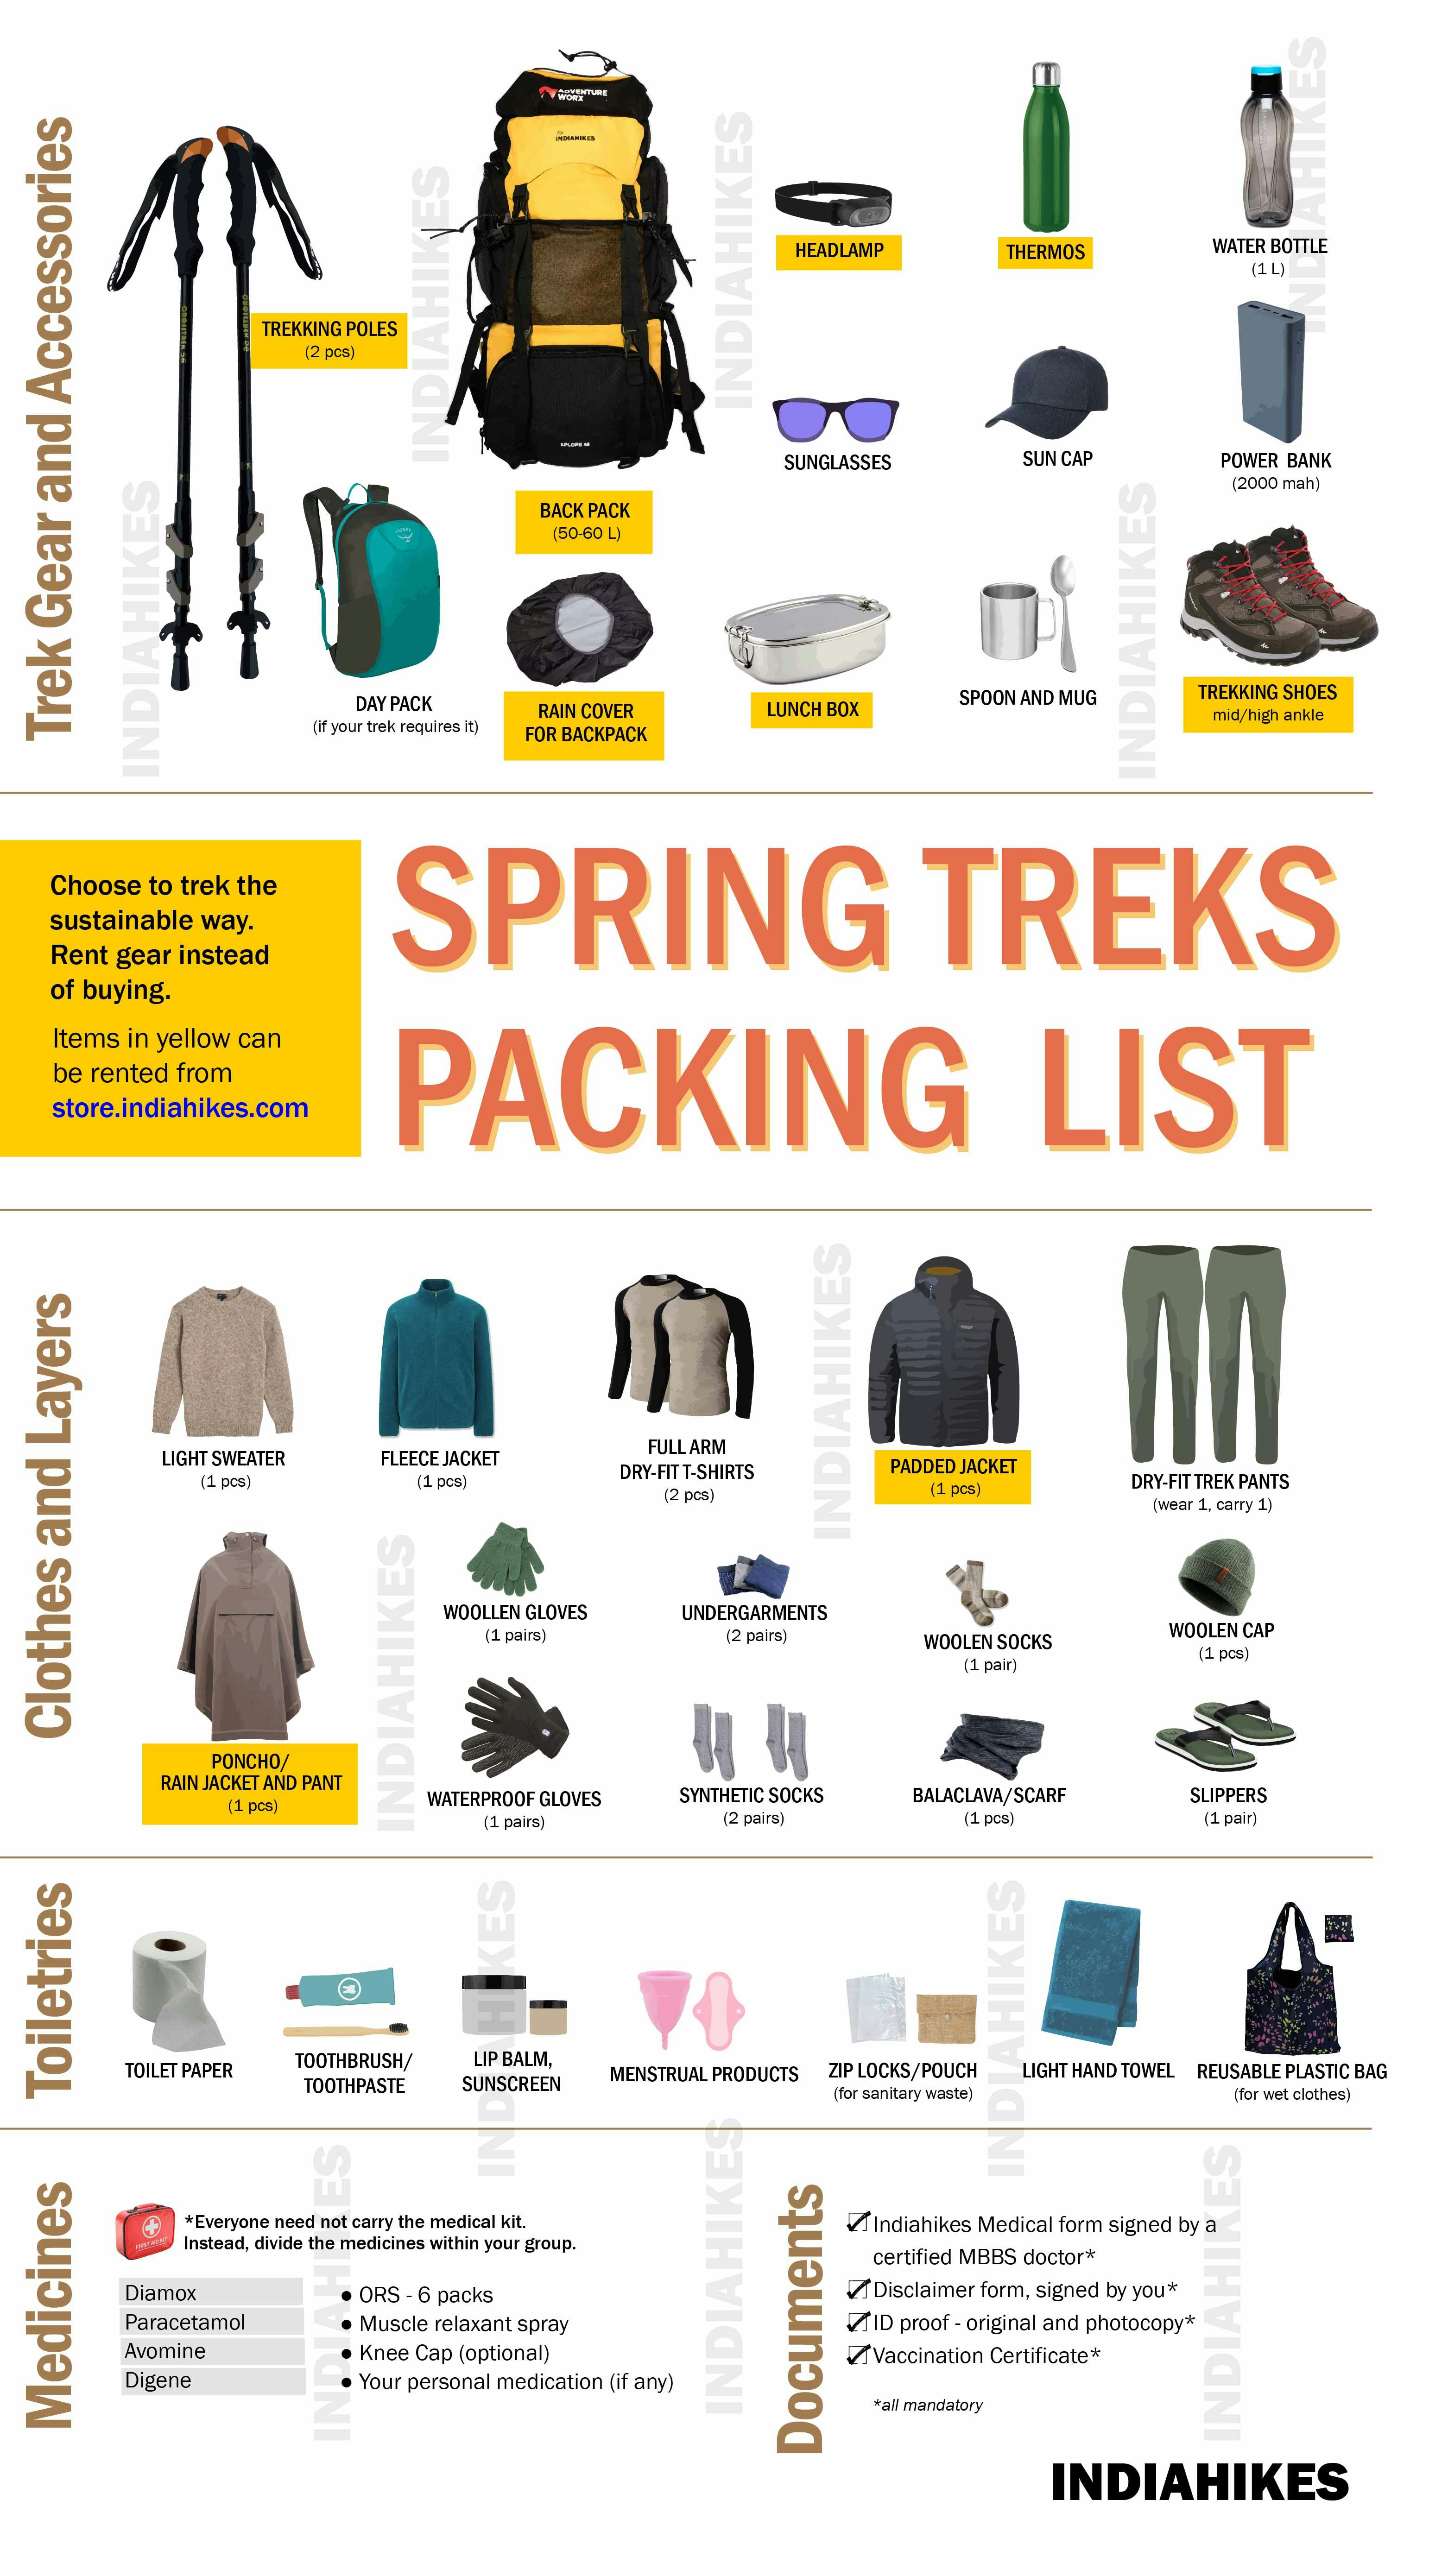 757e3192 2f63 4a9d a317 a2a3529aea3f indiahikes spring trek packing checklist 